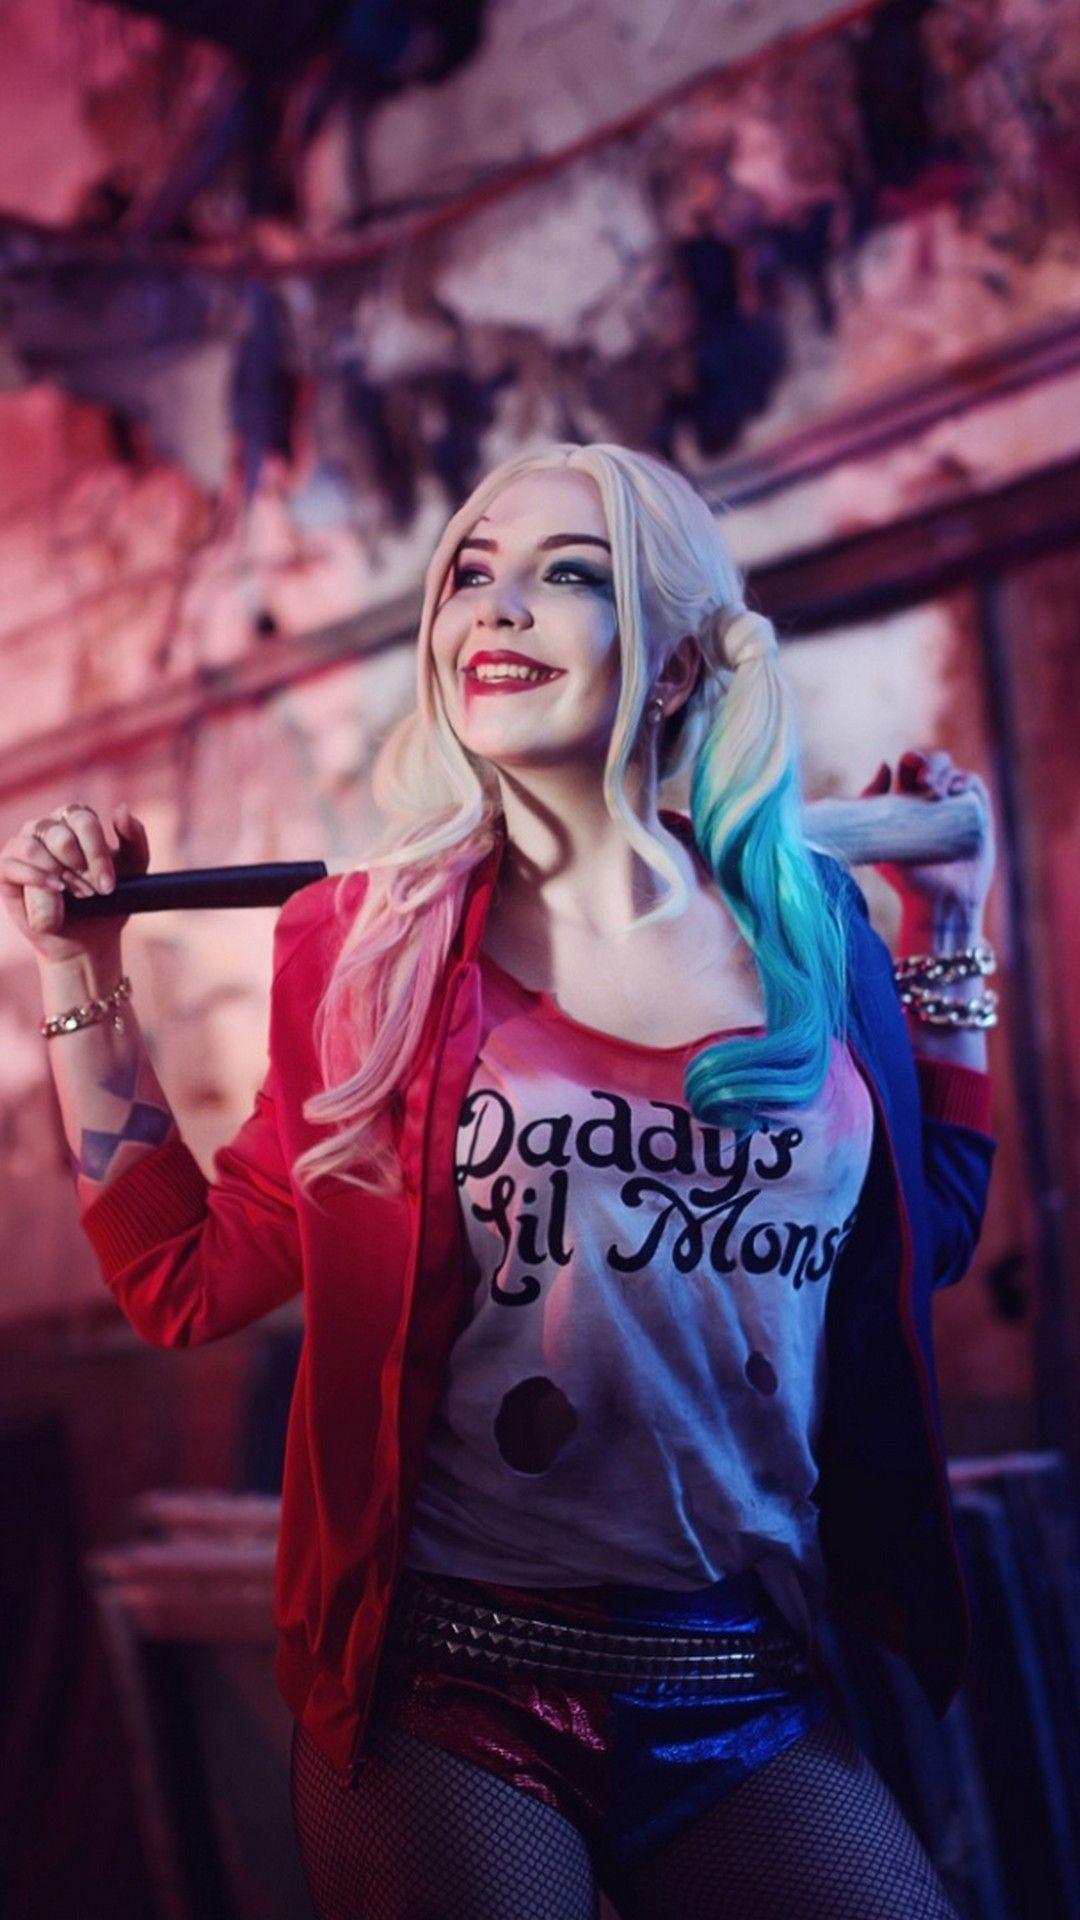 Harley Quinn and Joker Wallpaper